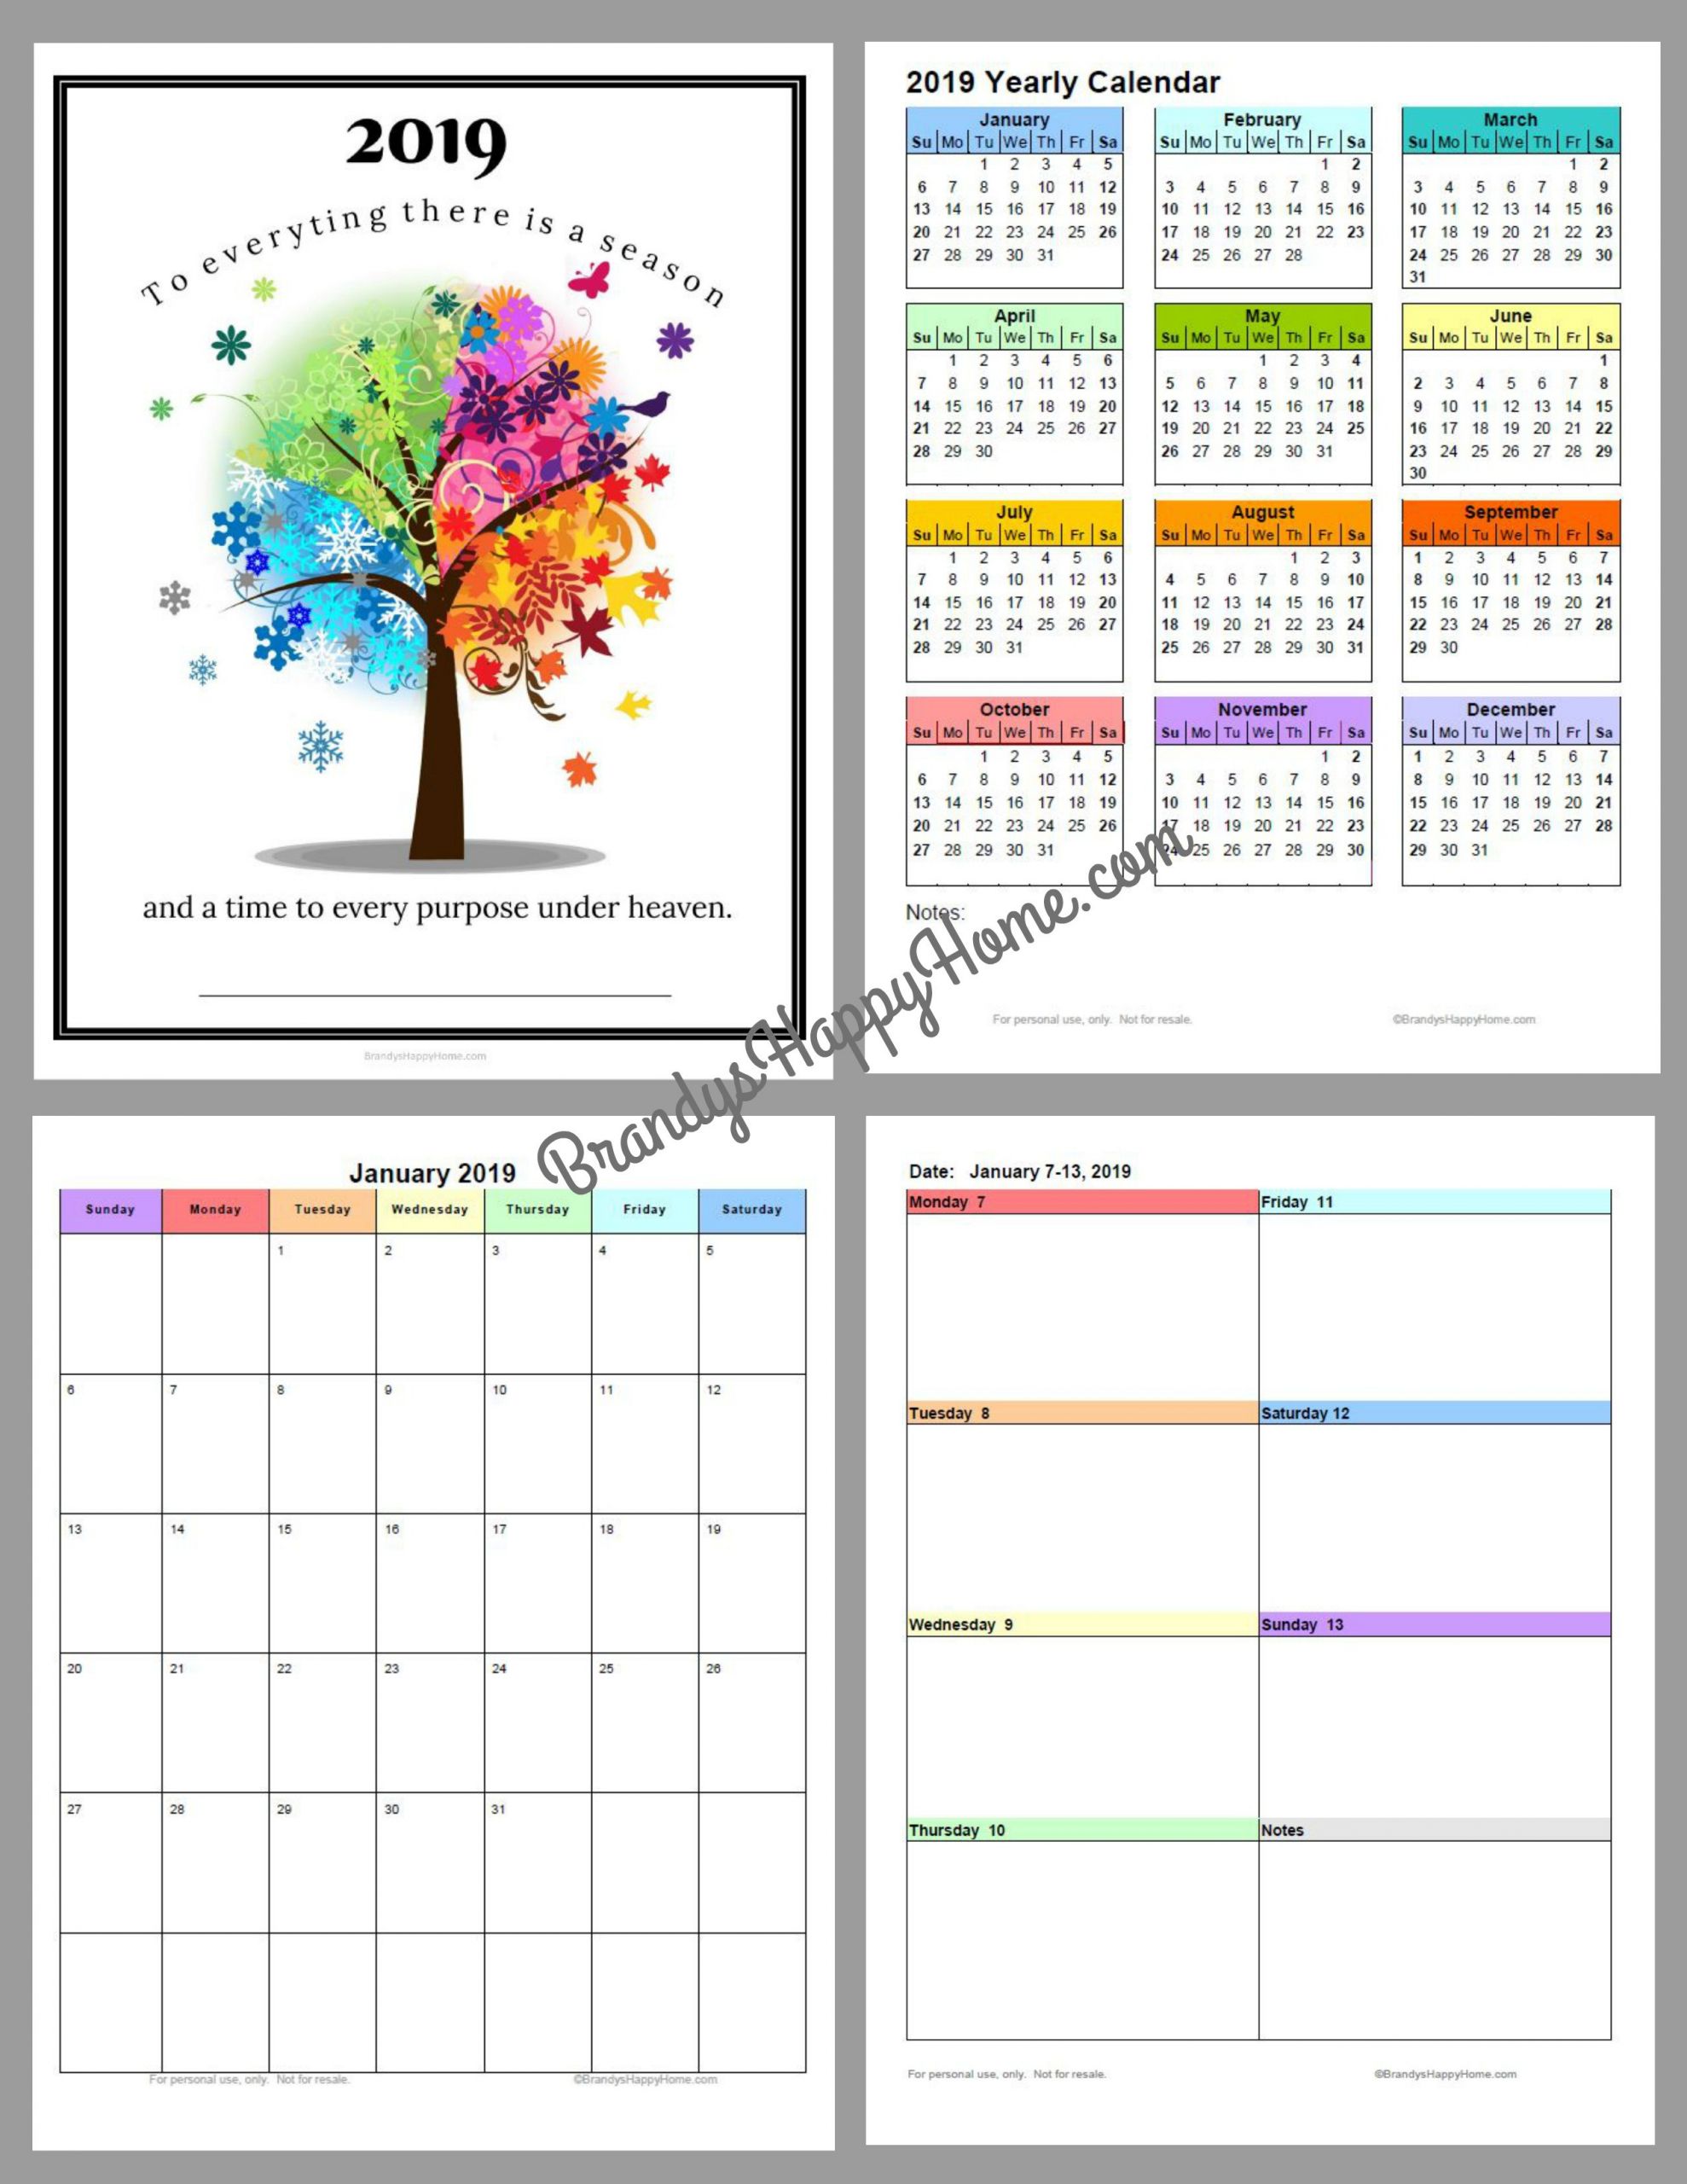 DIY Planners 2019
 FREE 2019 DIY Calendar Planner Printables